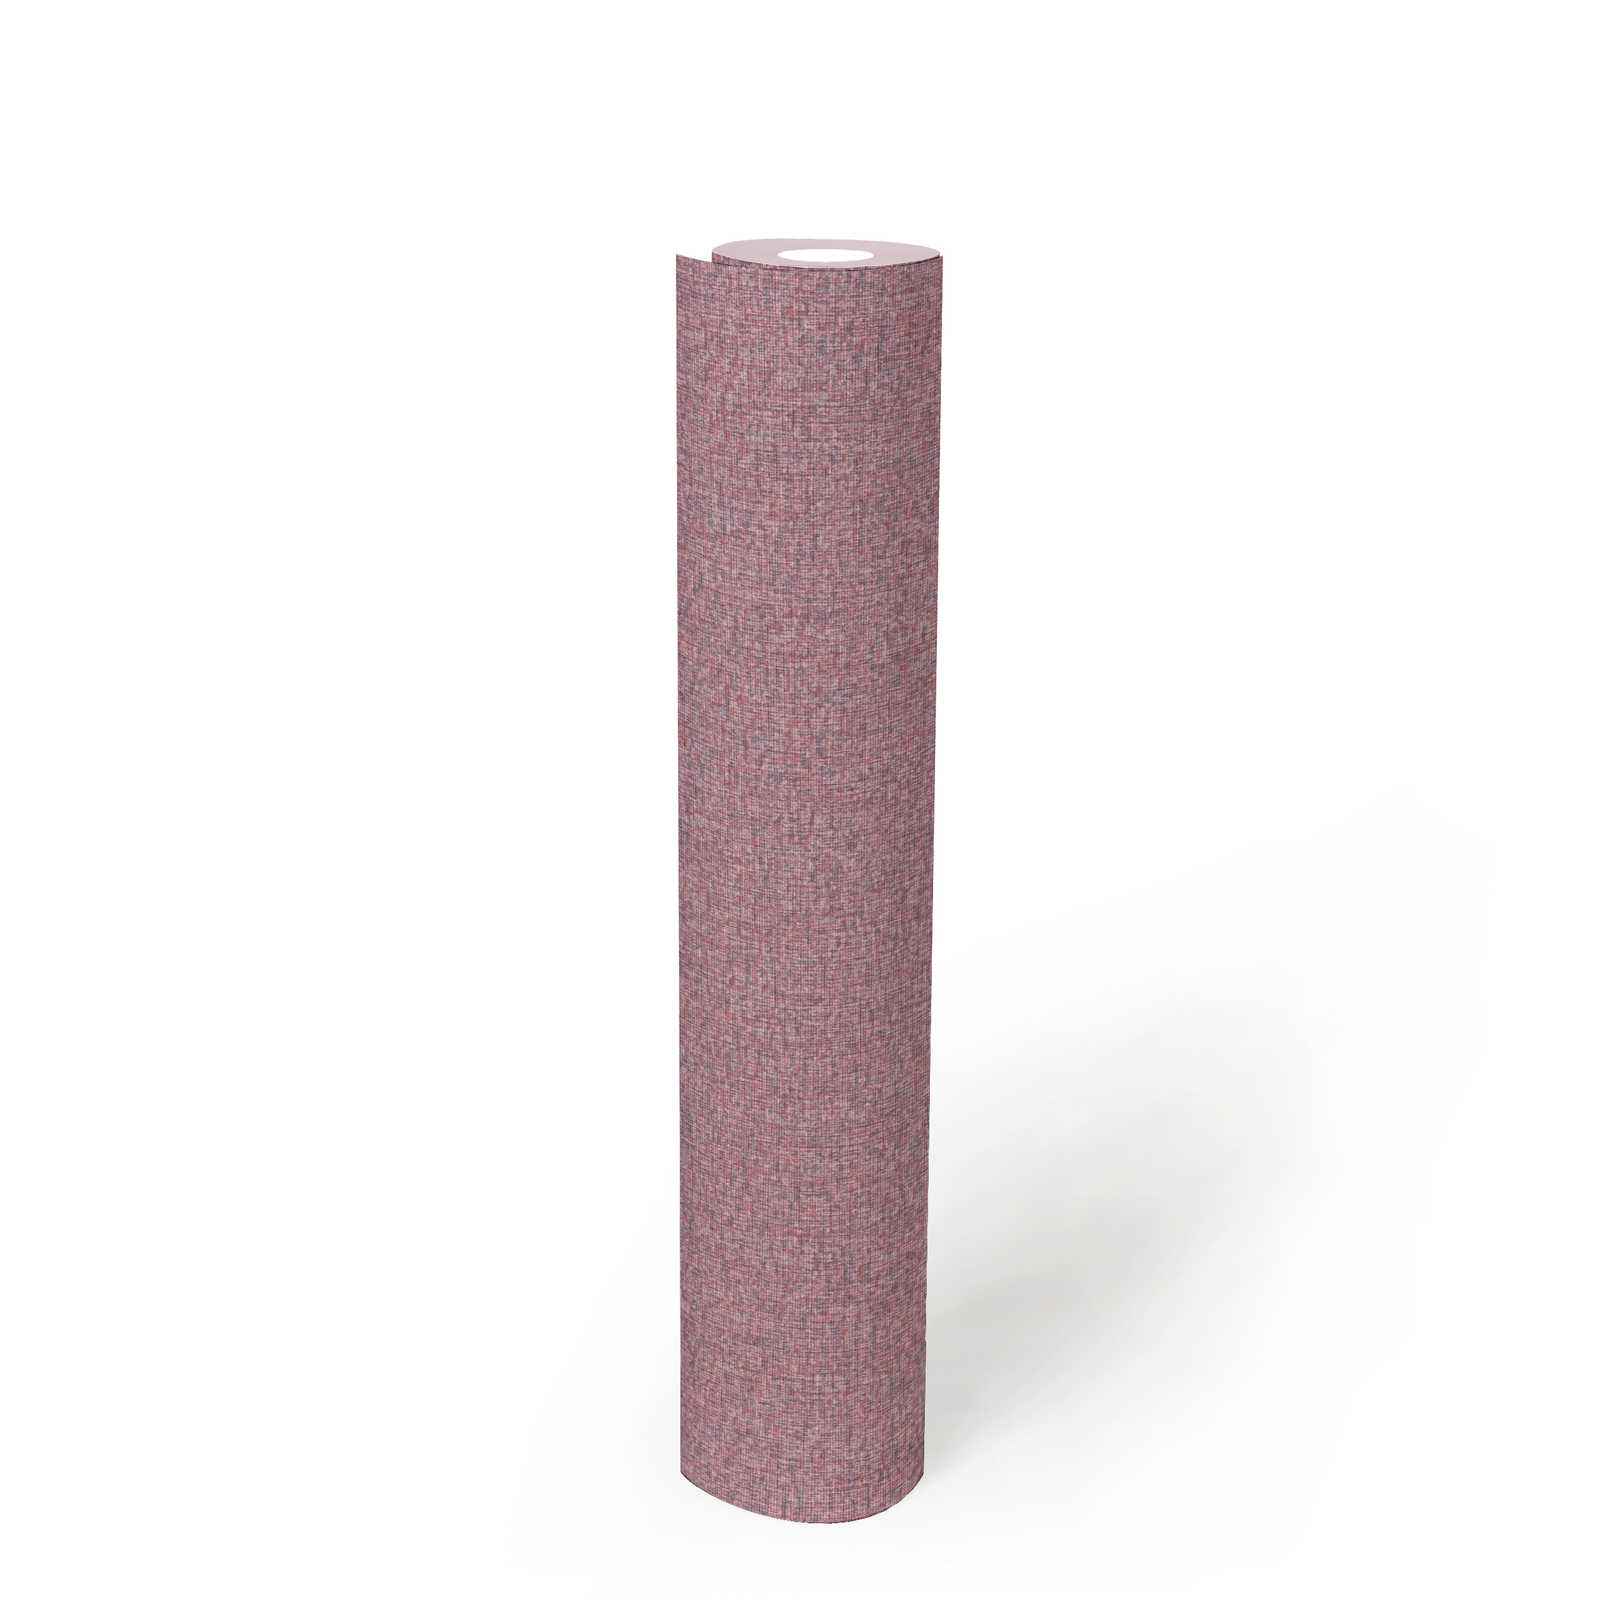             Vliesbehang met weefselstructuur effen, mat - paars, roze
        